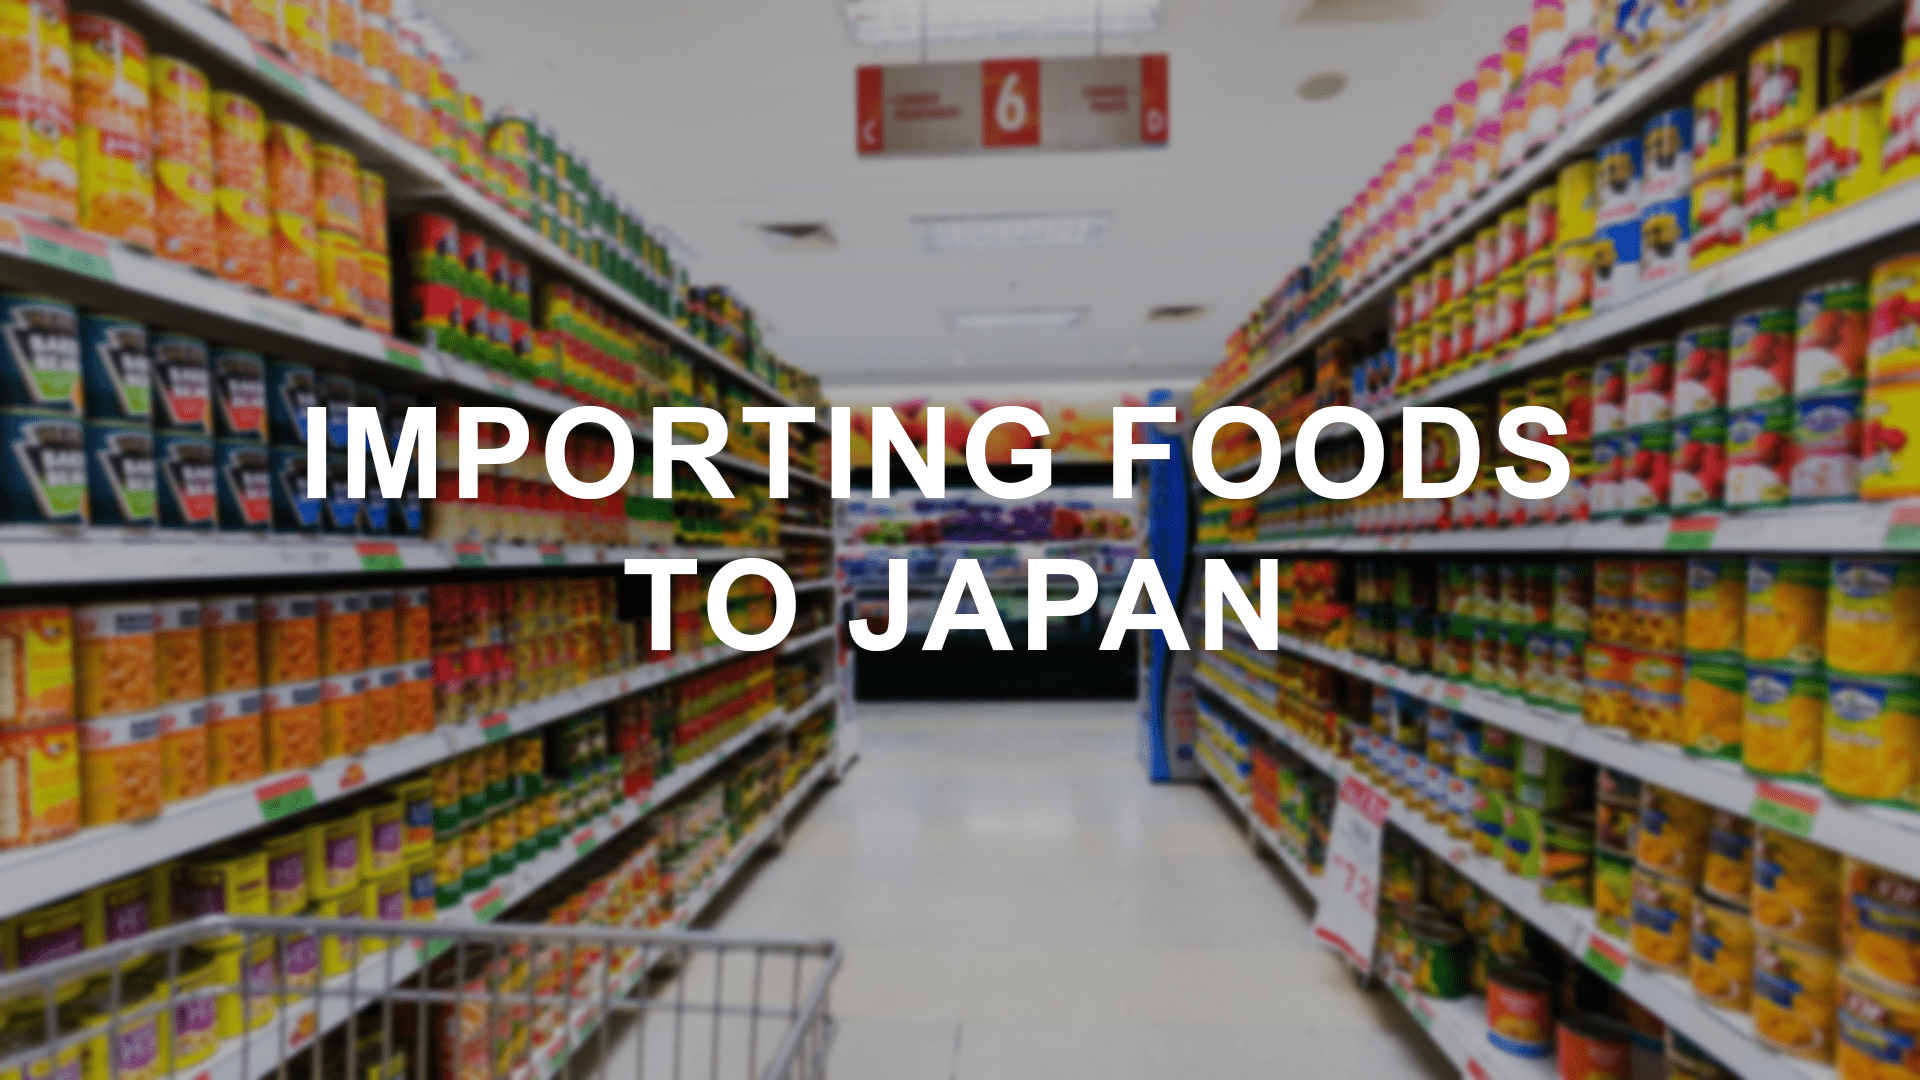 向日本进口食品。你需要知道什么？